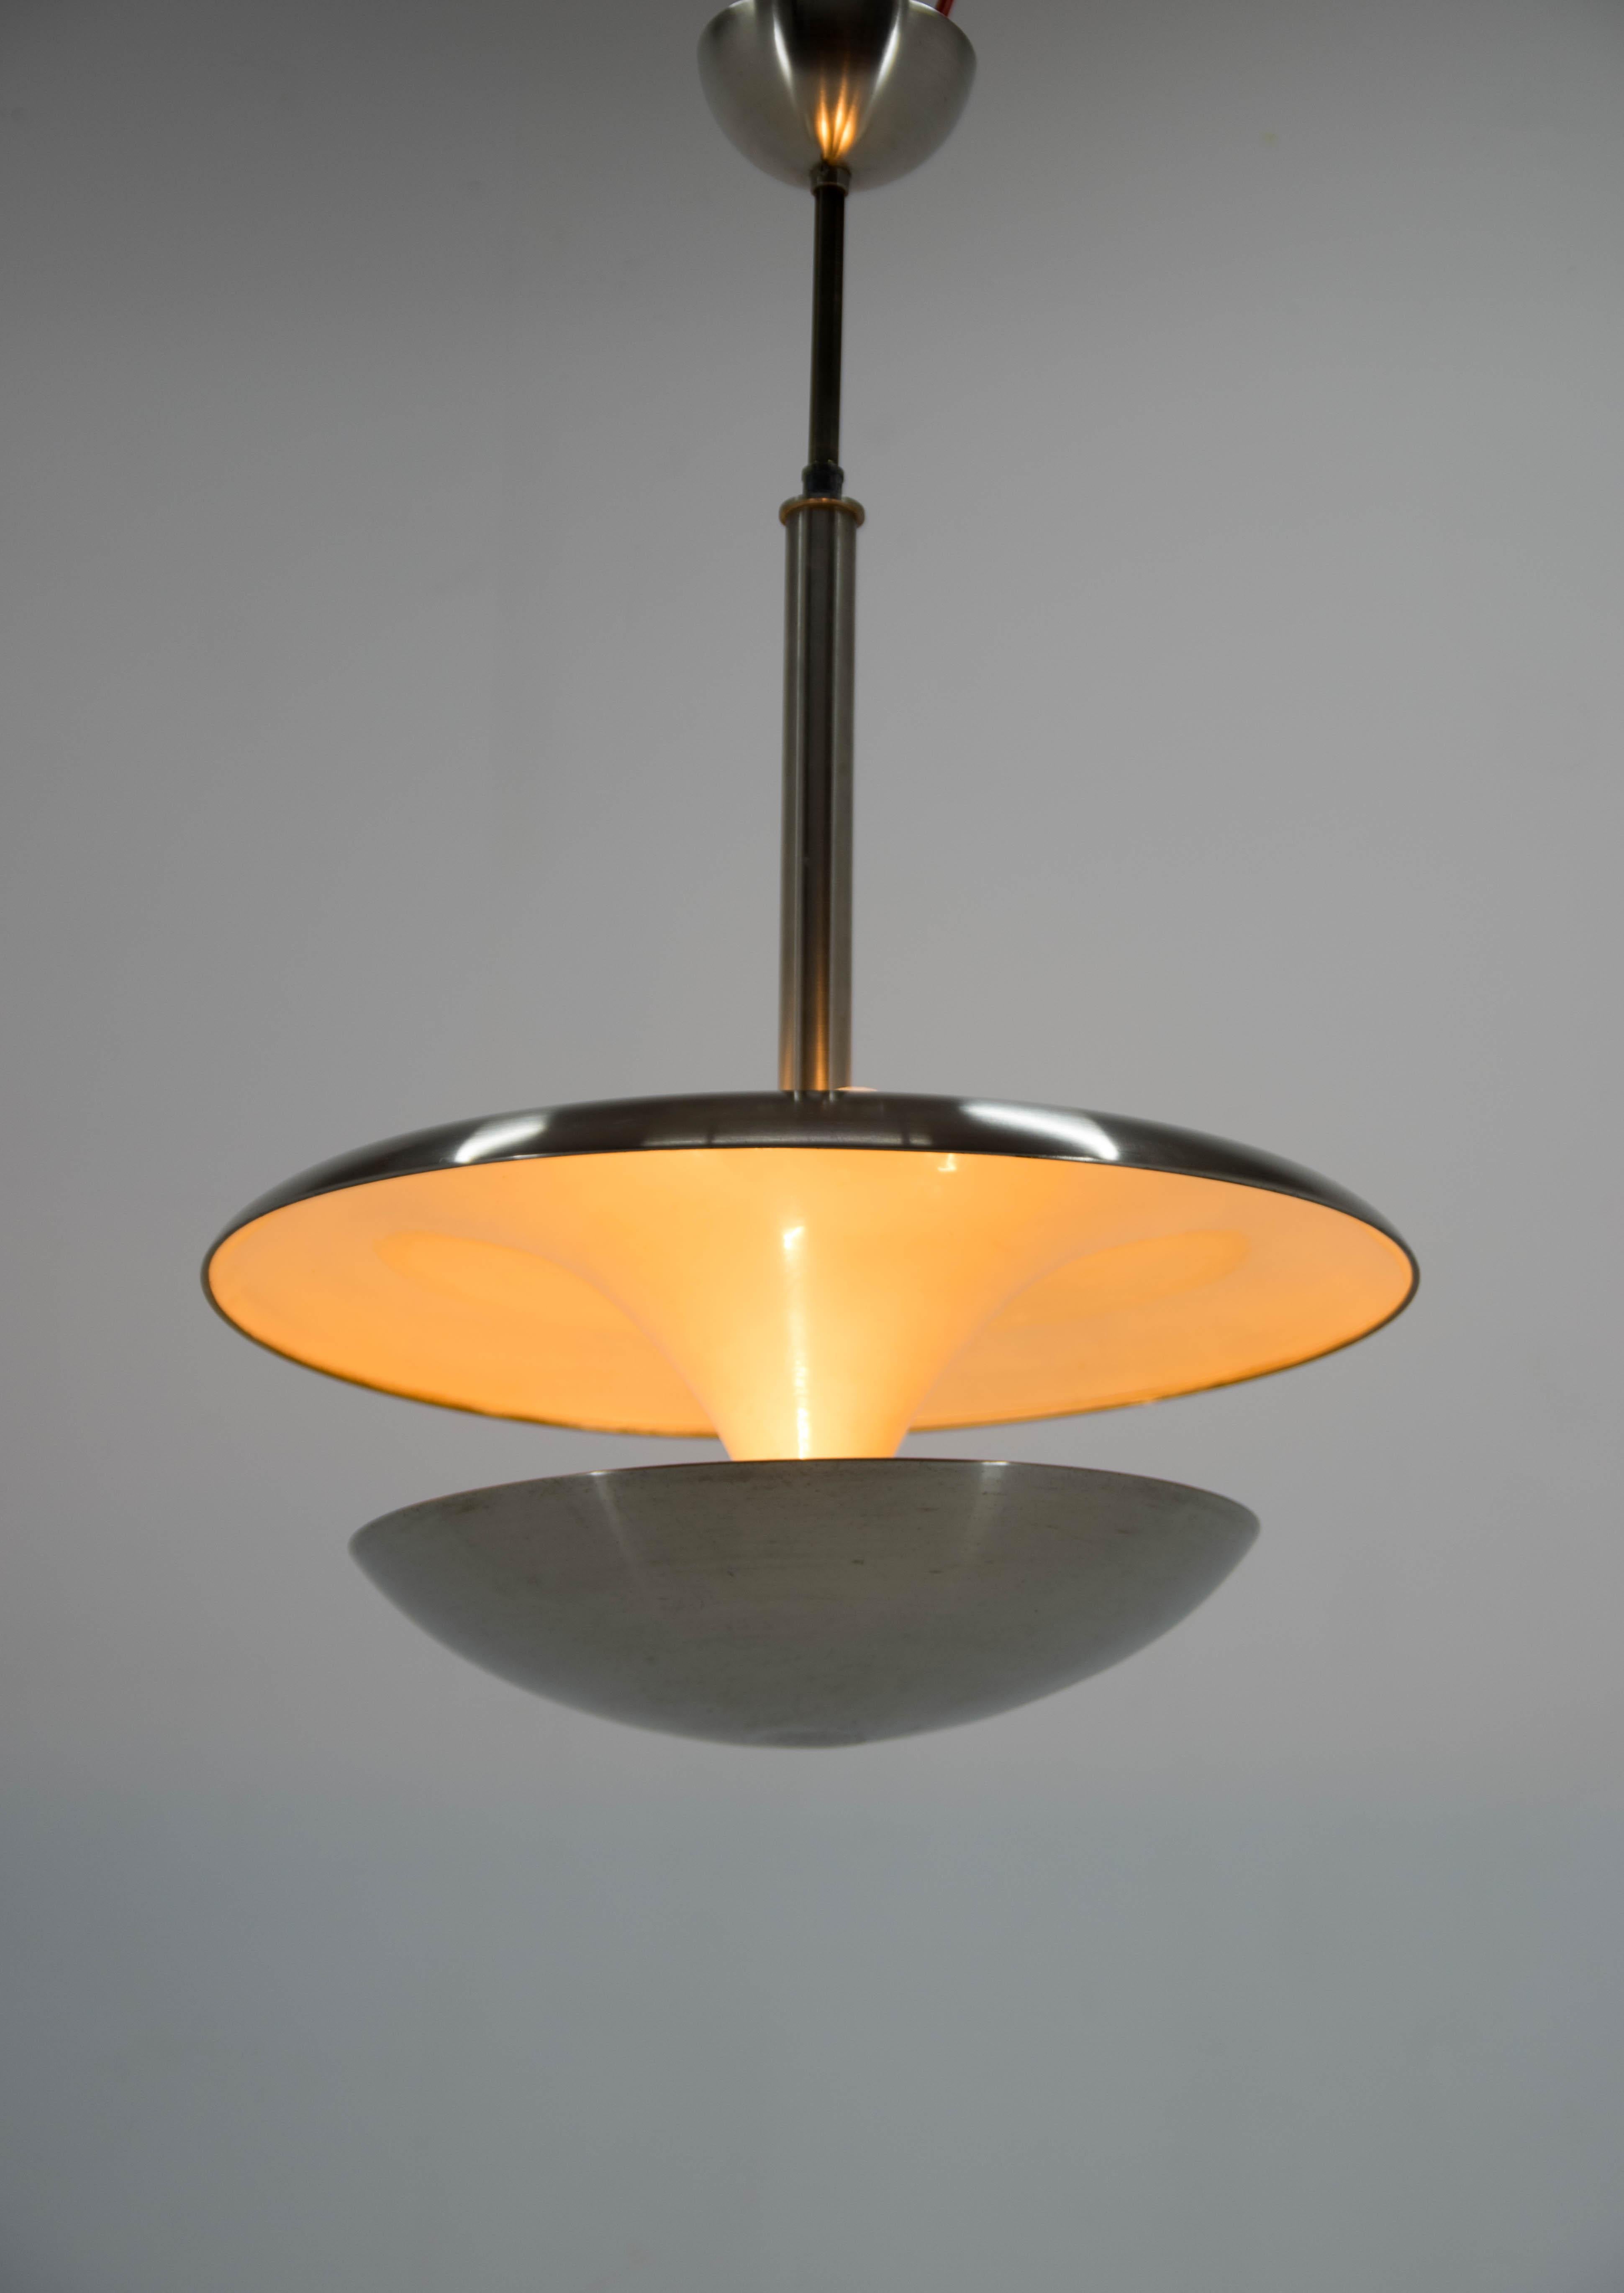 Rare lustre Bauhaus en laiton nickelé conçu par Frantisek/One dans les années 1920 et produit par sa société IAS. Les ampoules supérieures et inférieures peuvent être commutées séparément pour produire différents types d'éclairage. Très élégante !